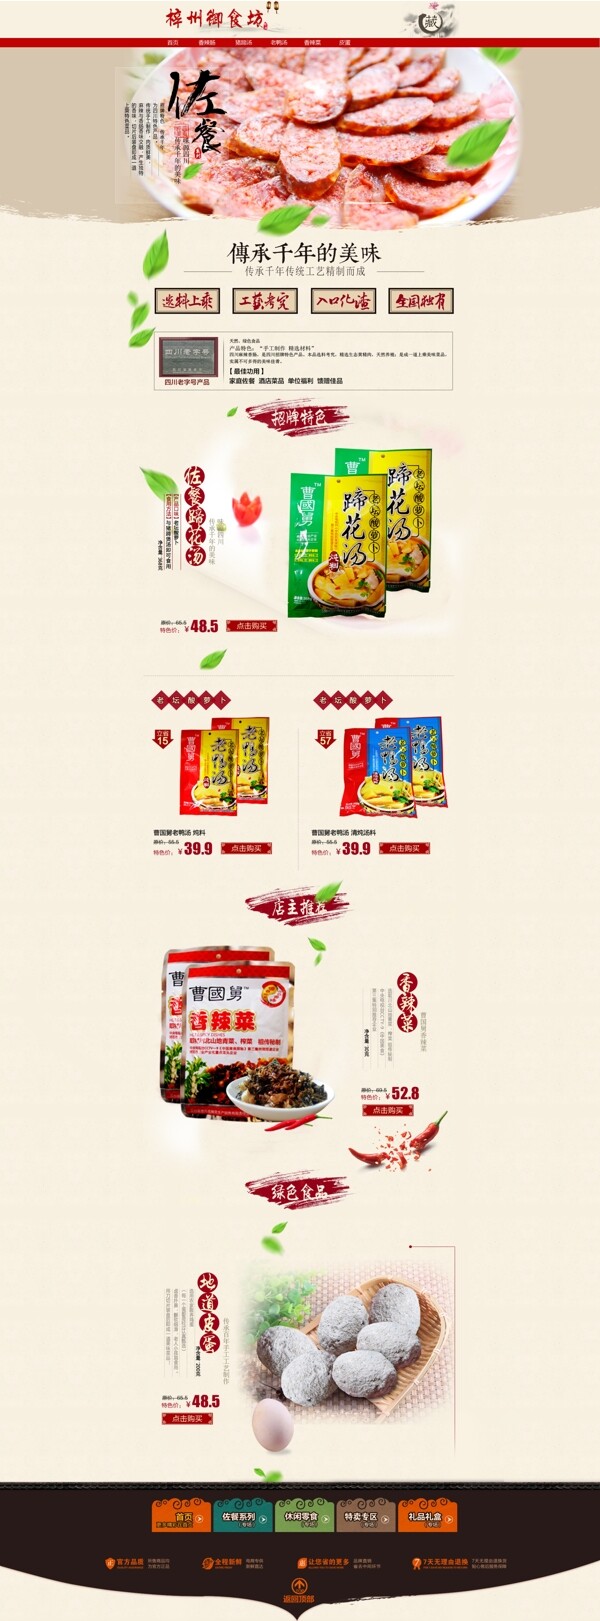 中国风食品淘宝店铺全屏首页设计模板